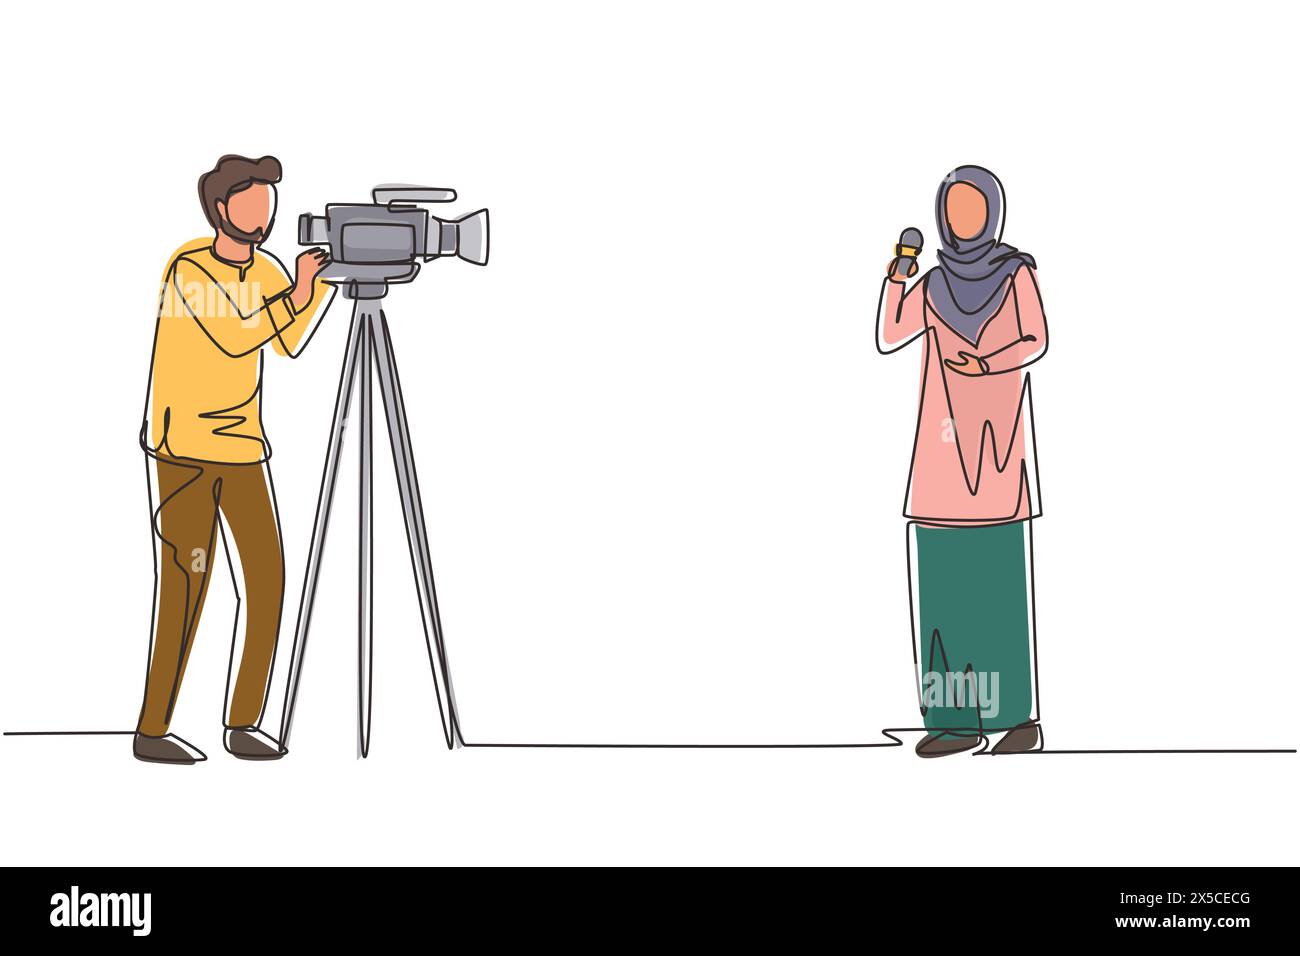 Singola linea continua che disegna una donna araba reporter. Giornalisti da segnalare. Due giornalisti arabi. Squadra di donna reporter giornalista uomo operatore Broa Illustrazione Vettoriale